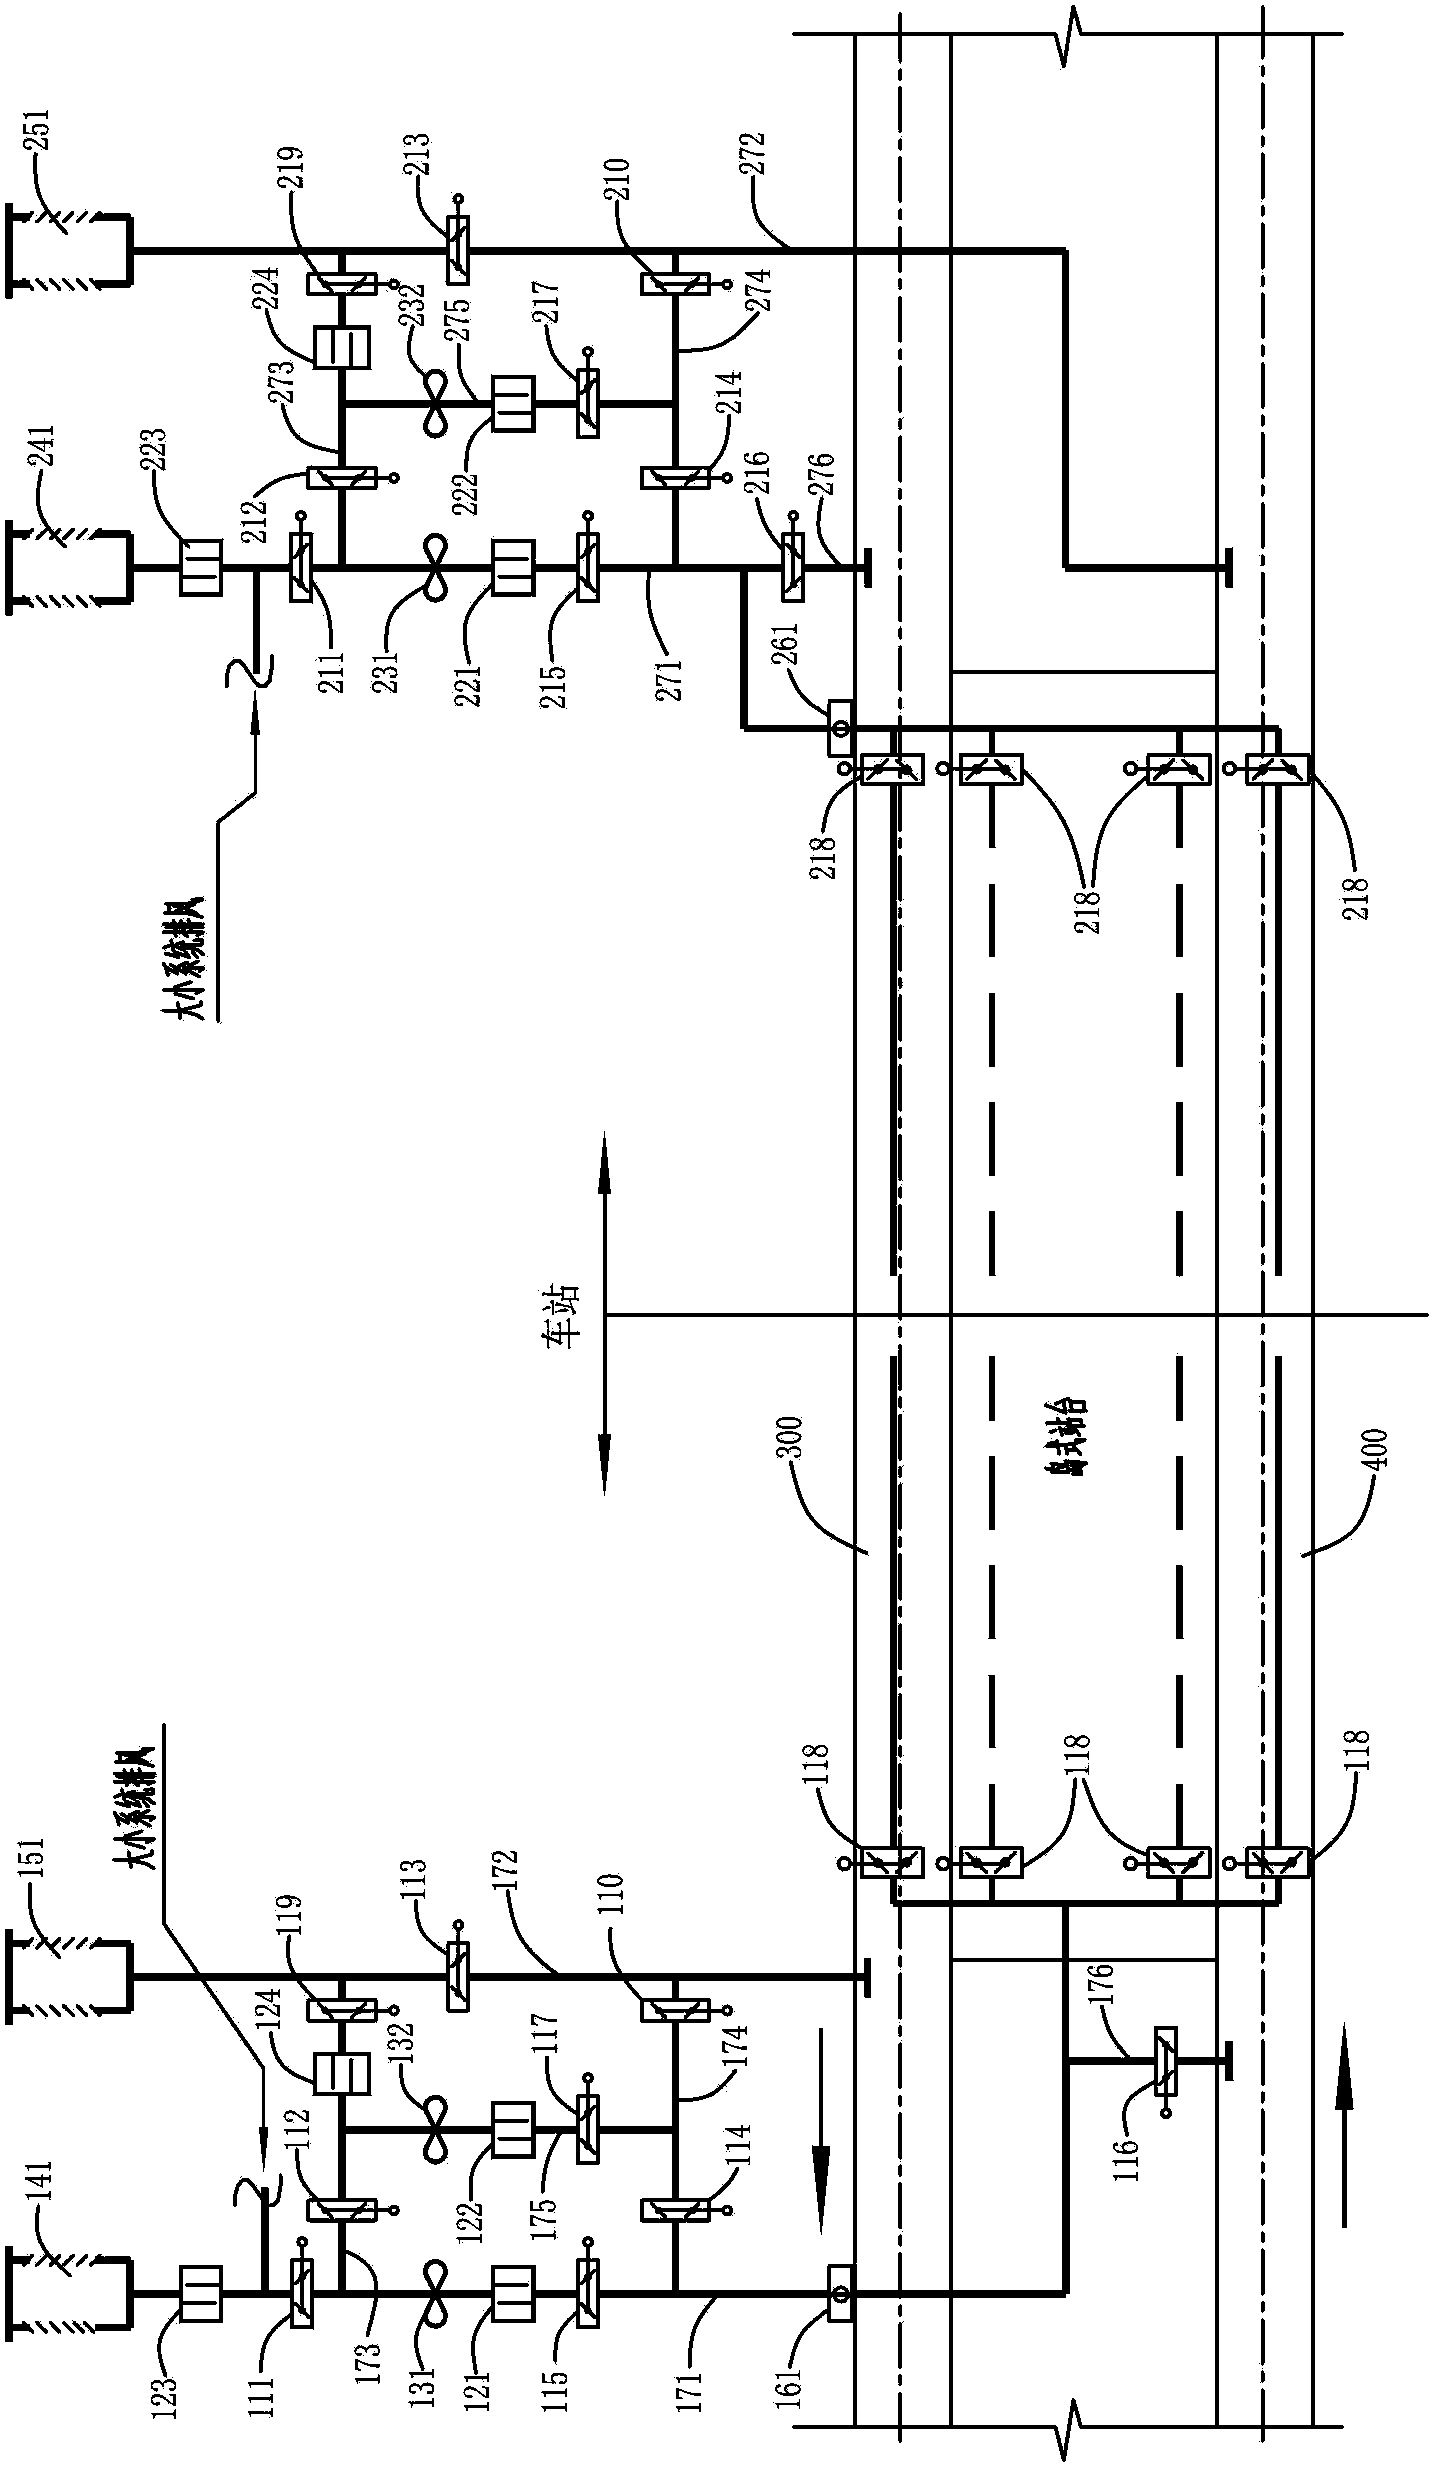 Novel tunnel ventilation system for subway station